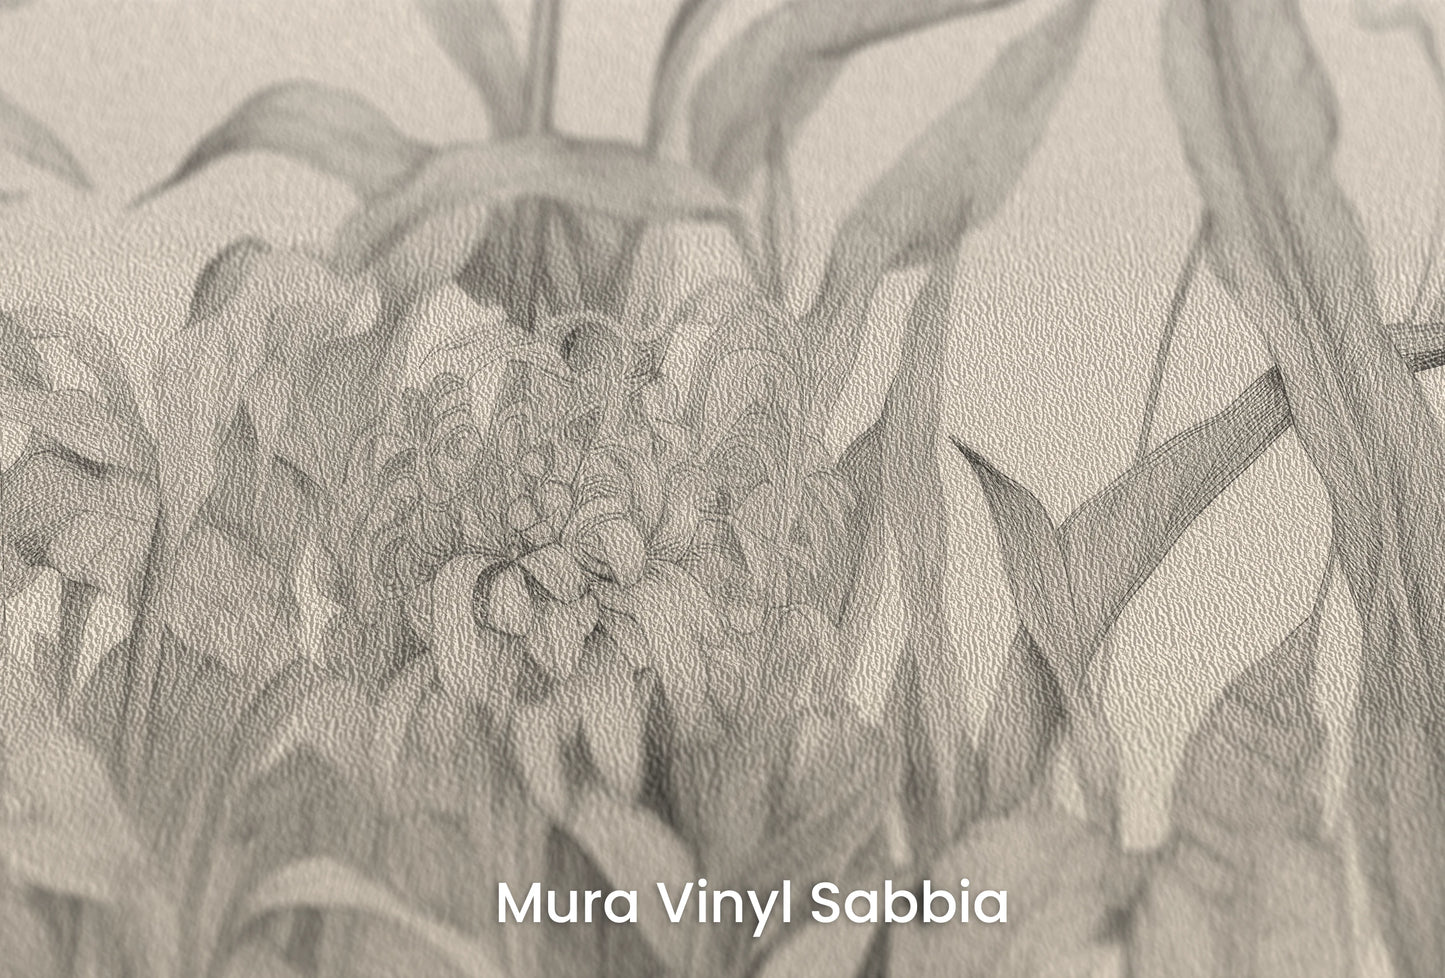 Zbliżenie na artystyczną fototapetę o nazwie Floral Dance na podłożu Mura Vinyl Sabbia struktura grubego ziarna piasku.